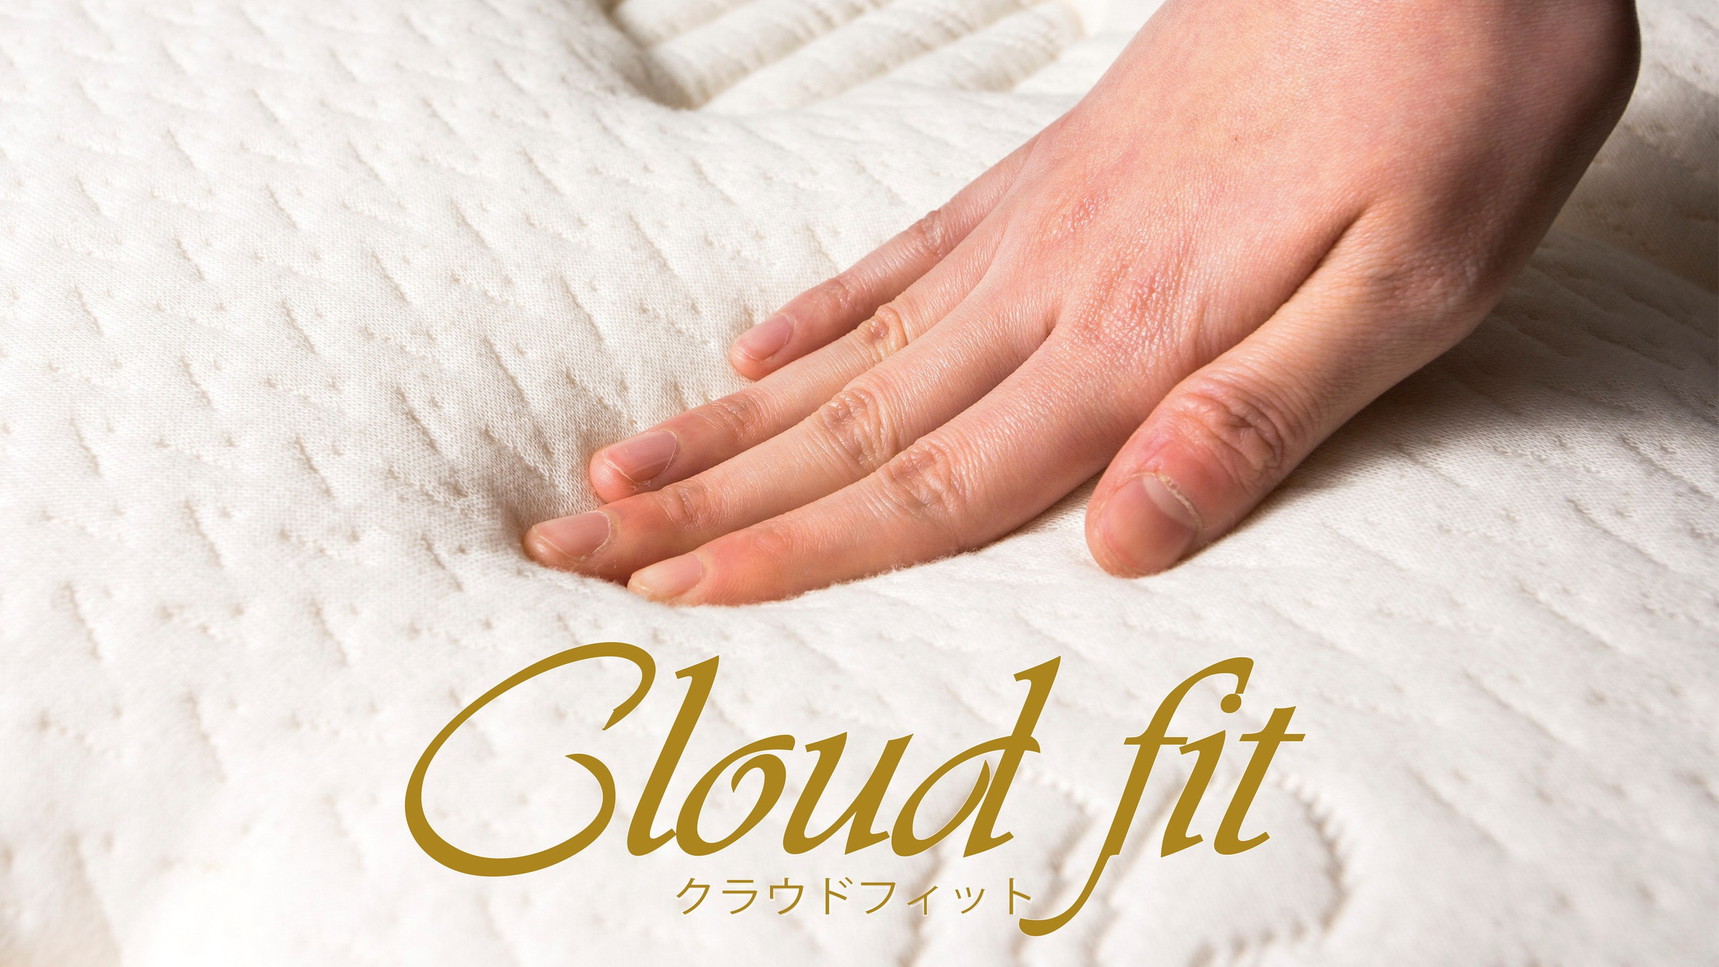 「Cloud fit(クラウドフィット)」